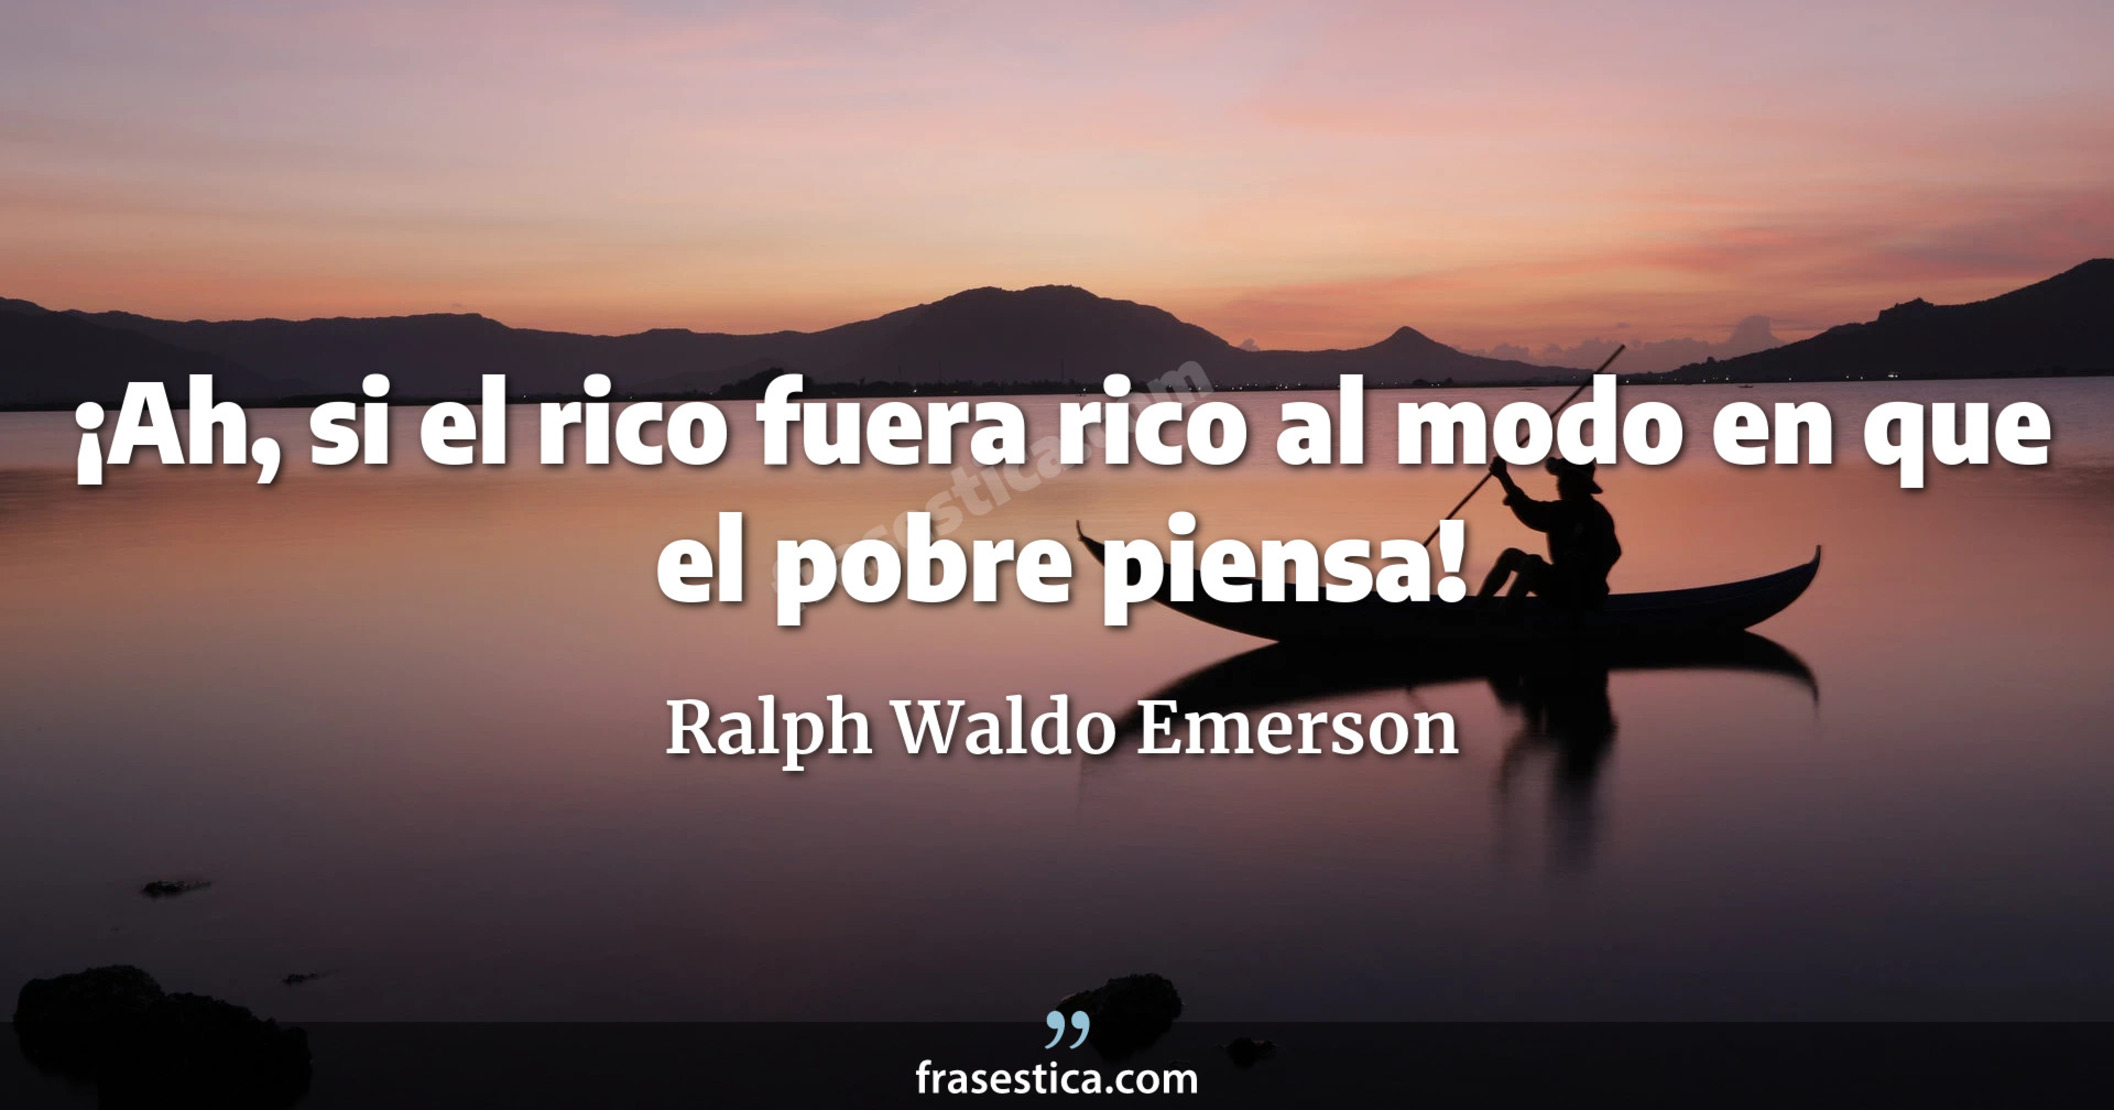 ¡Ah, si el rico fuera rico al modo en que el pobre piensa! - Ralph Waldo Emerson